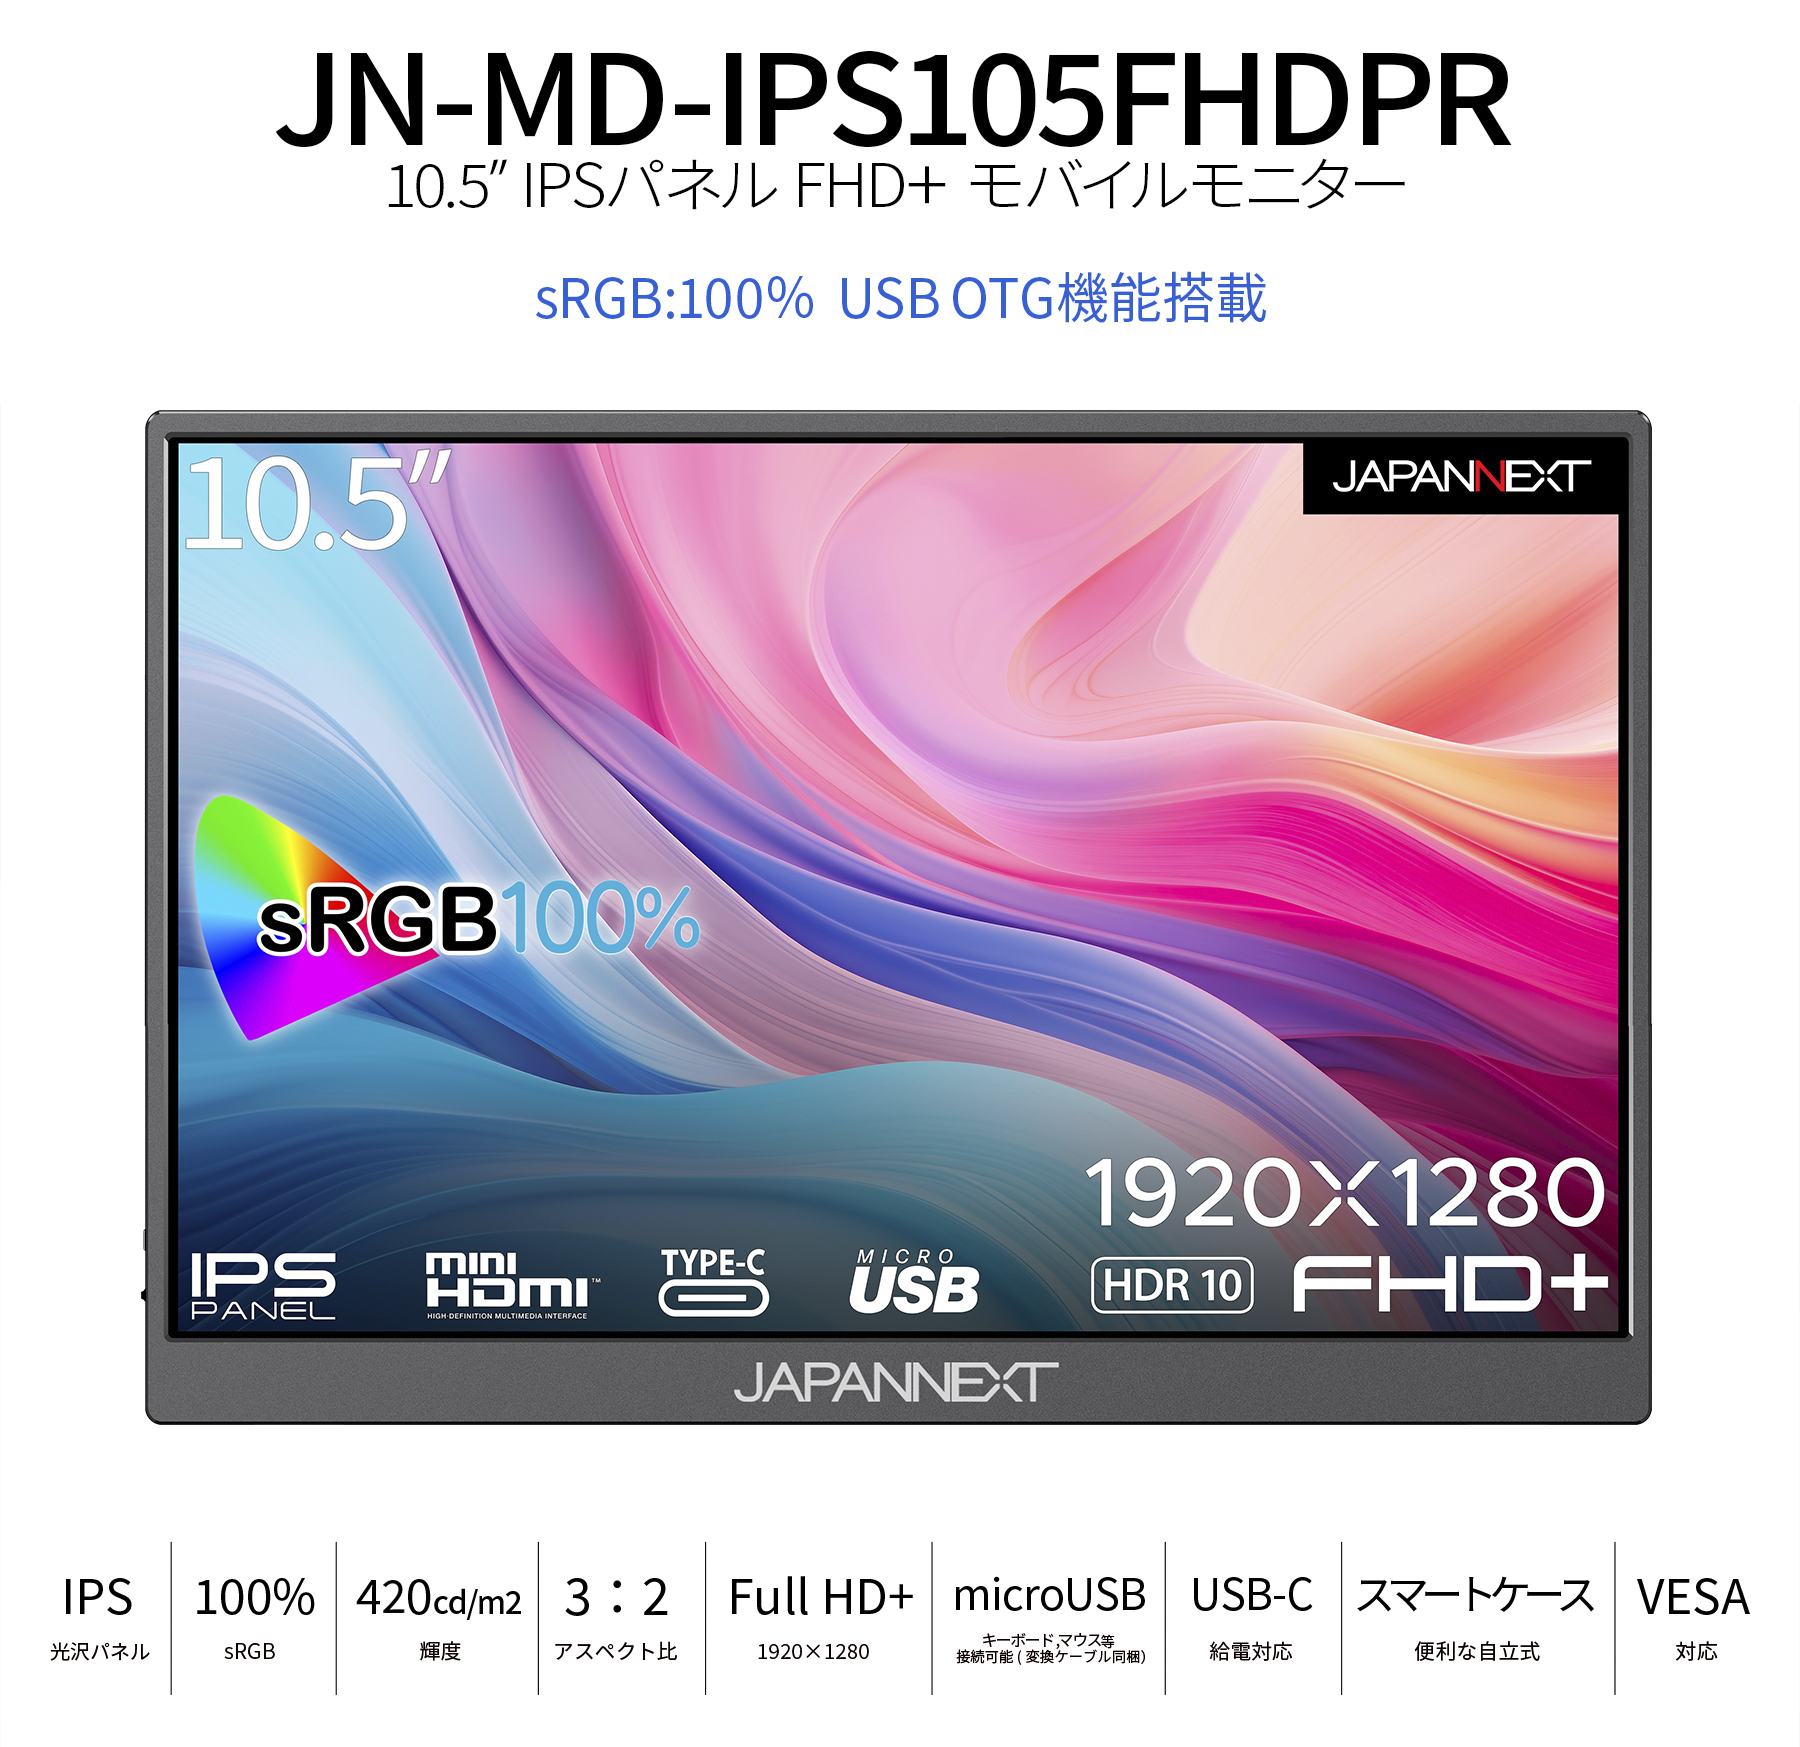 JAPANNEXT 10.5インチ IPSパネル フルHD+(1920x1280)解像度 モバイル 